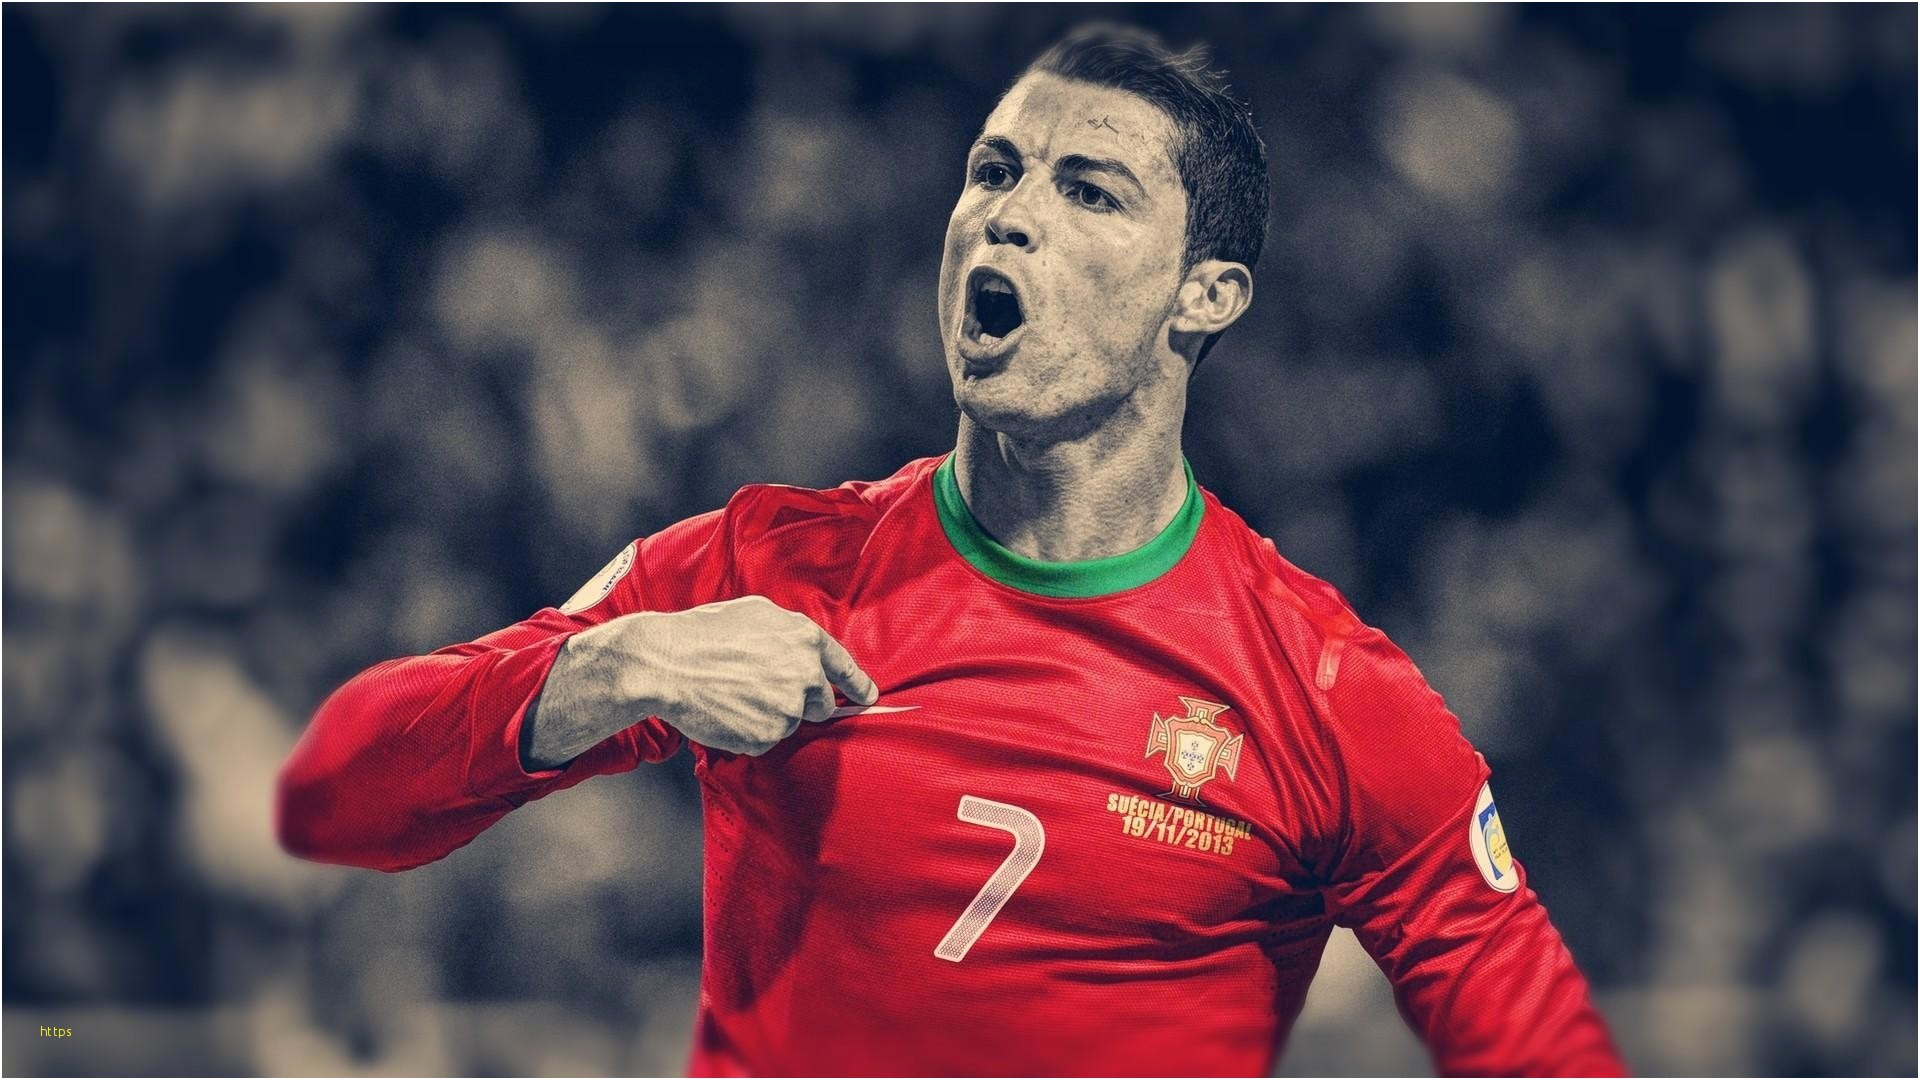 Cristiano Ronaldo Wallpapers Luxury Cristiano Ronaldo - Cristiano Ronaldo Hd 1080p , HD Wallpaper & Backgrounds